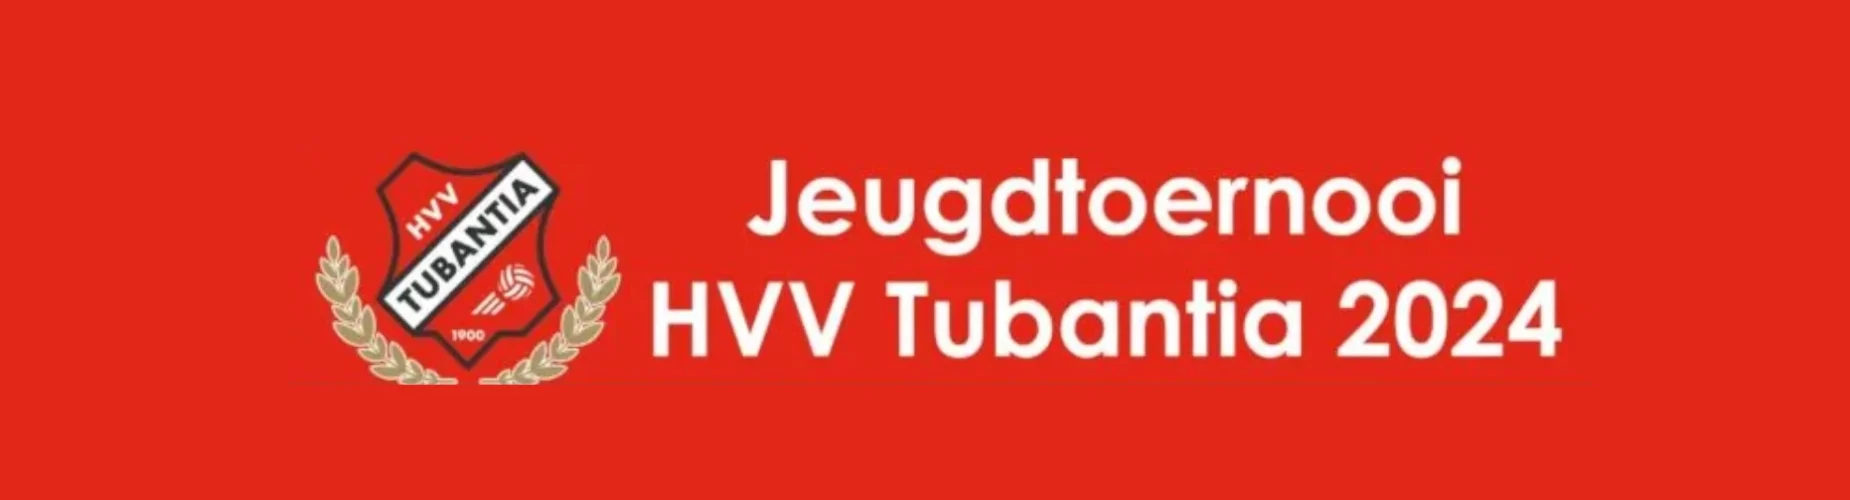 Banner - Jeugdtoernooien hvv tubantia - Tubanters - Enschede